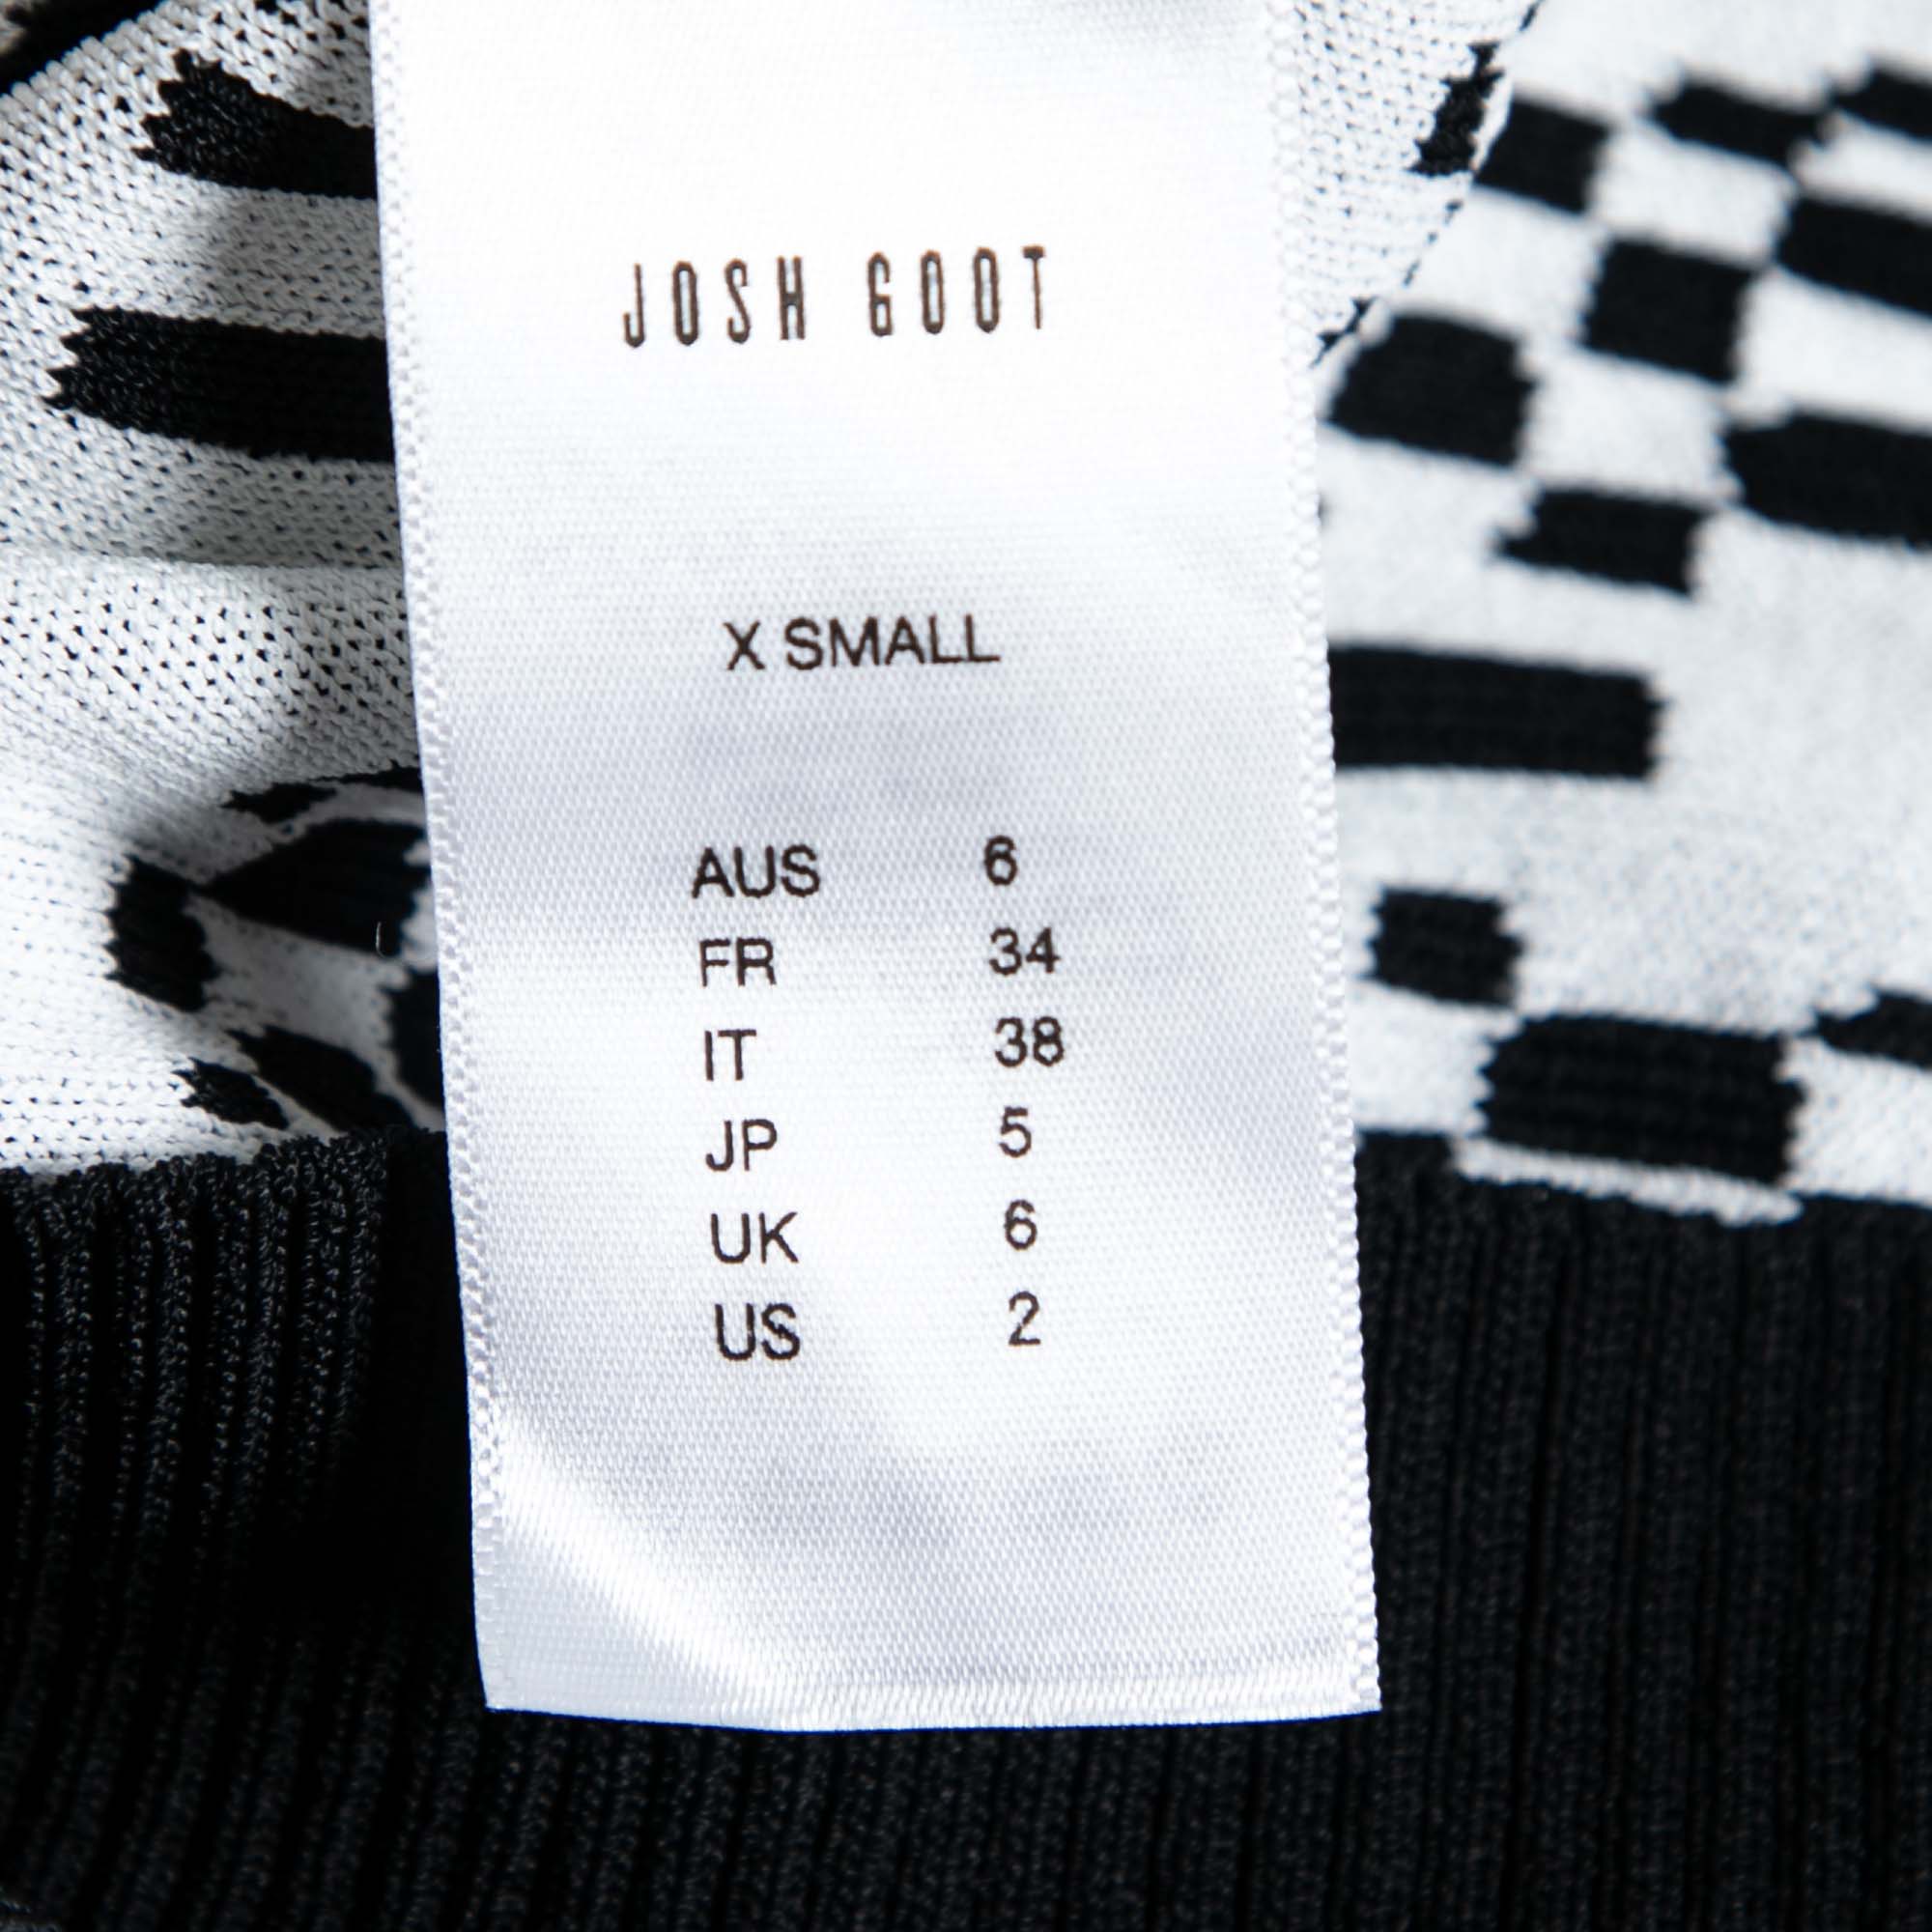 Josh Goot Monochrome Pixel Intarsia Knit Glitch Sweater Dress XS